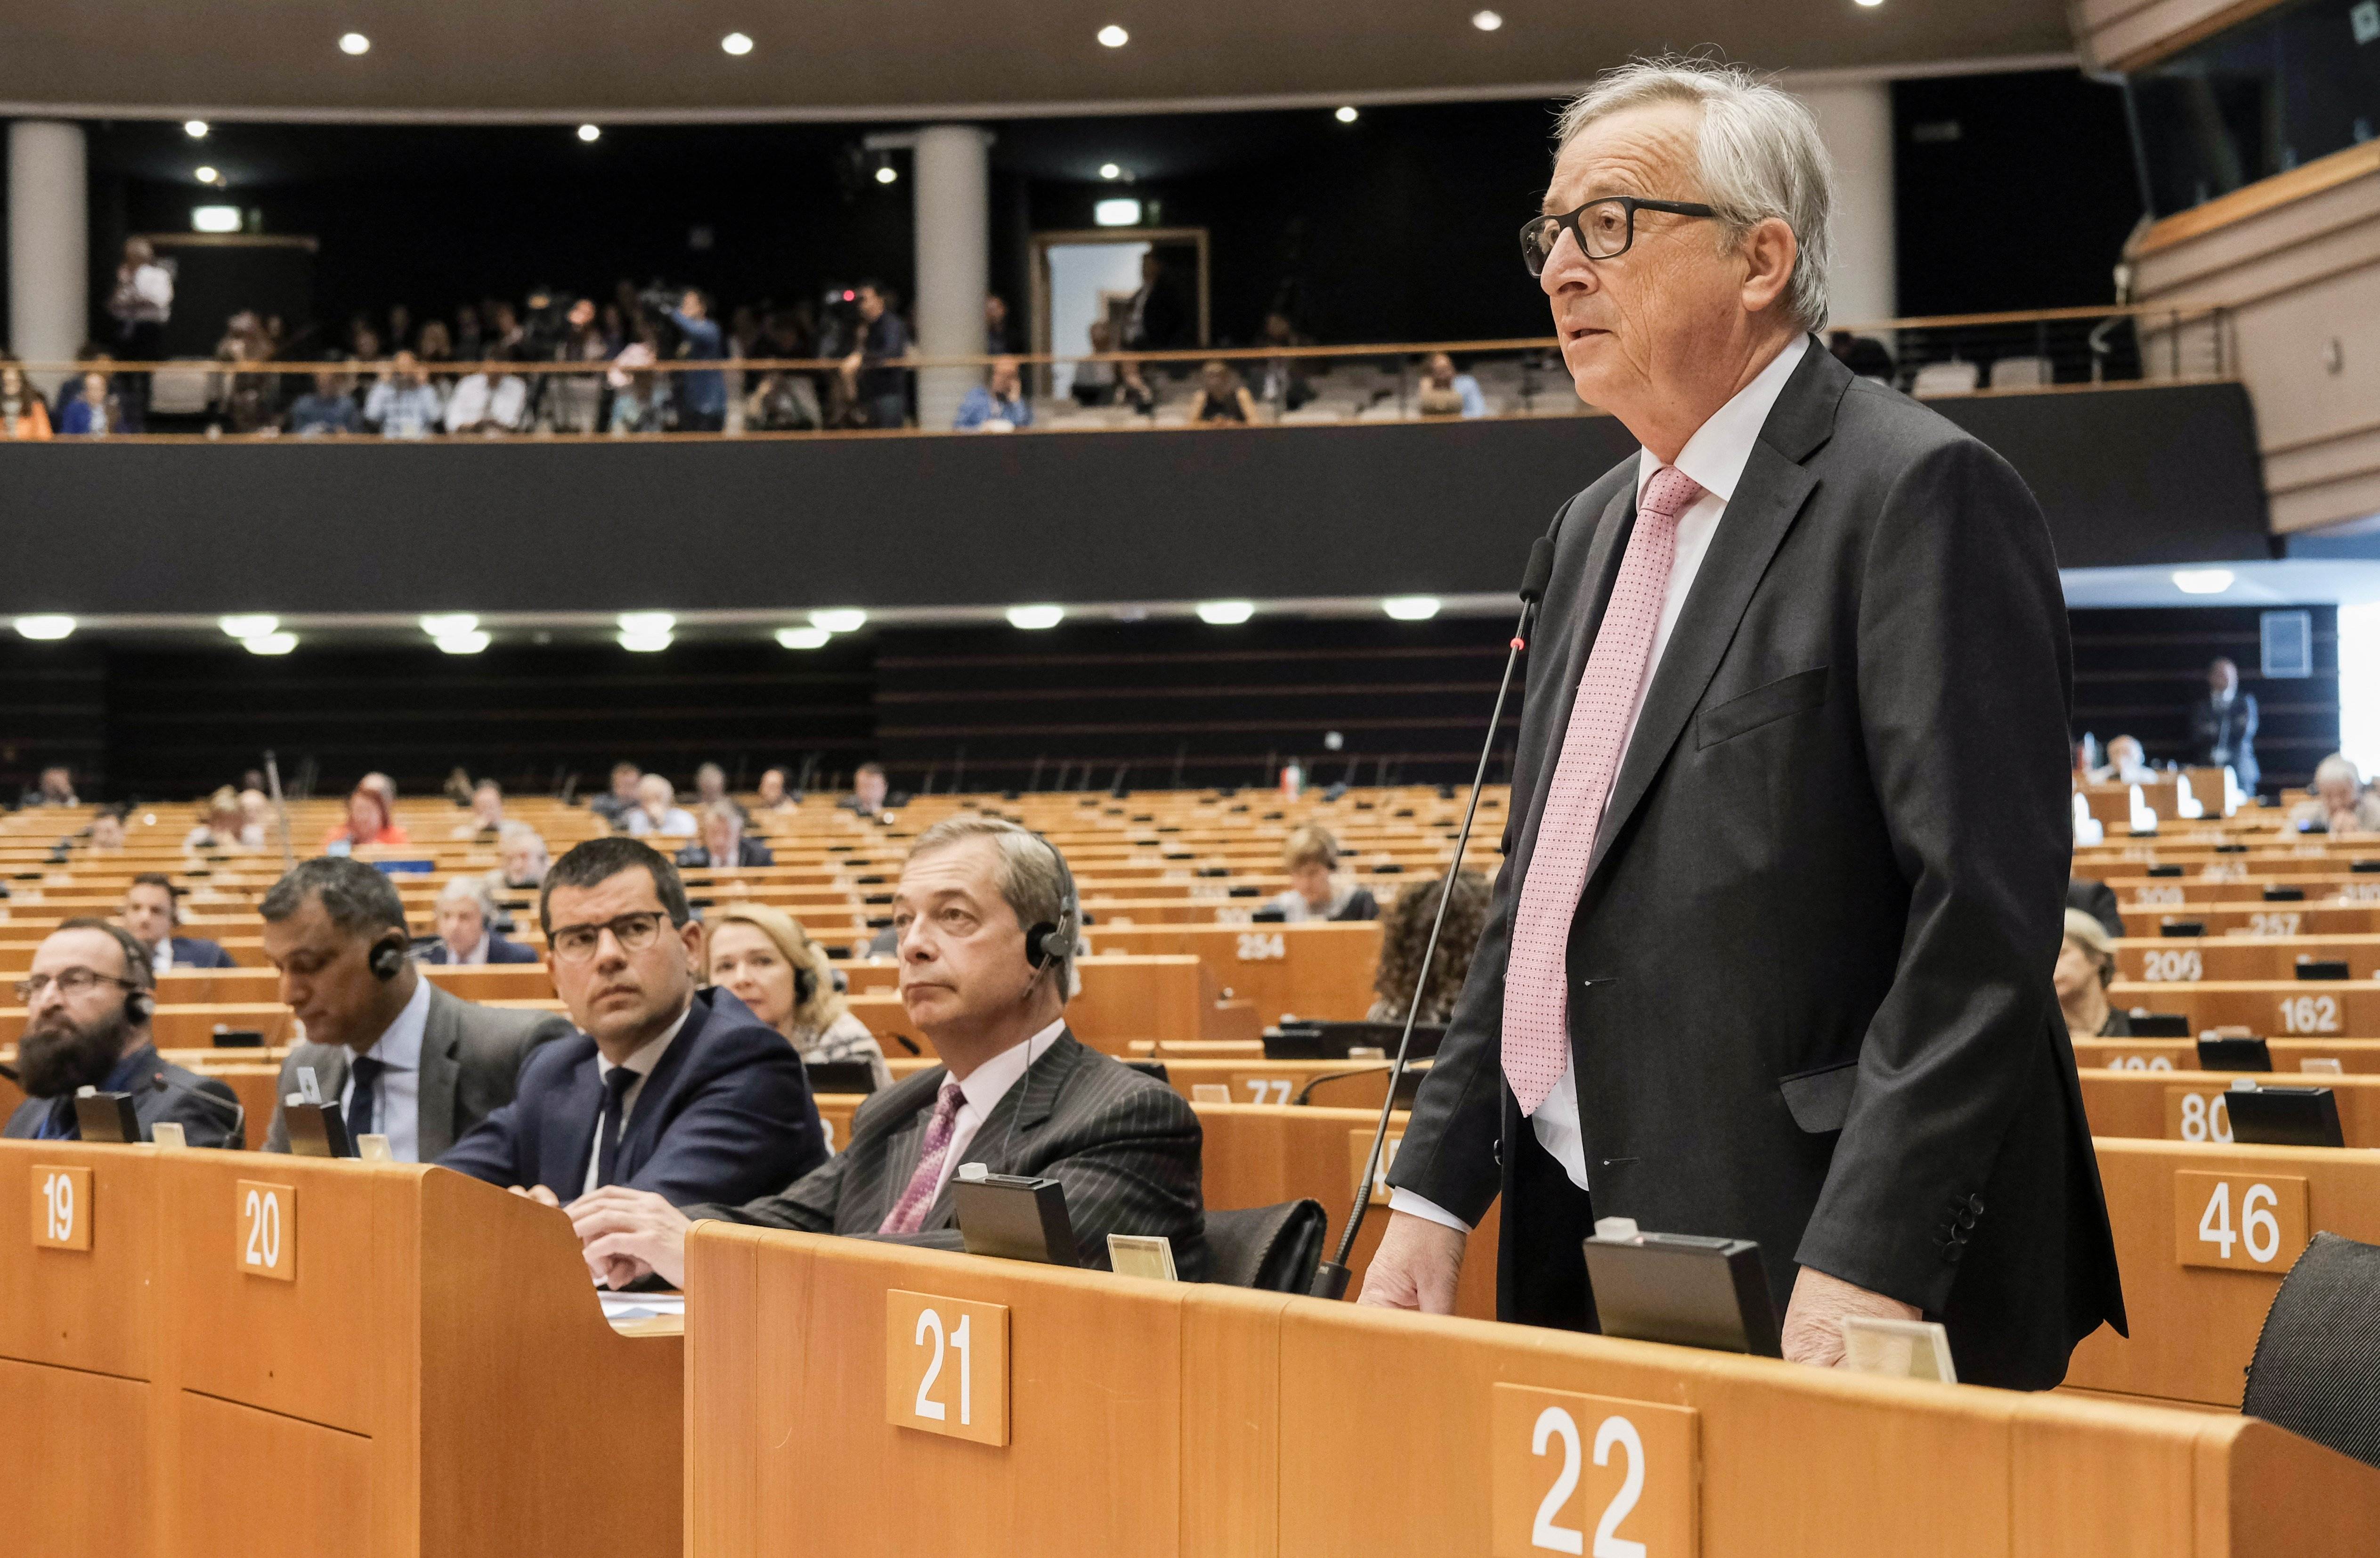 La Comisión Europea sale en defensa de Juncker (y corta las especulaciones)